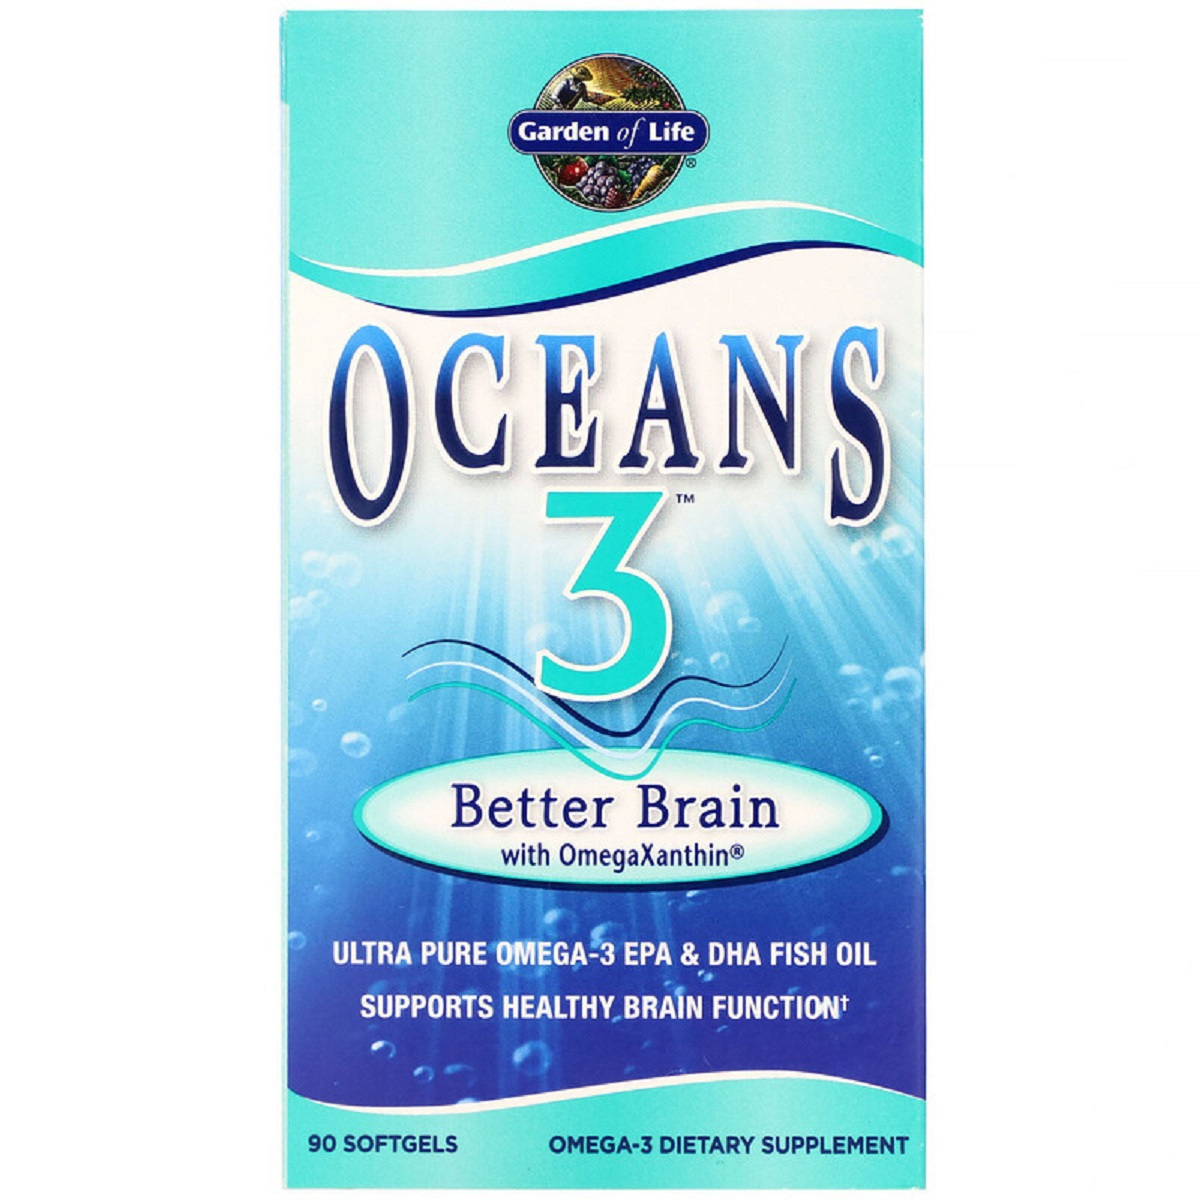 Комплекс Для Підтримки Мозку З Омега-Ксантином, Oceans 3, Better Brain with OmegaXanthin, Garden of Life, 90 м'яких желатинових